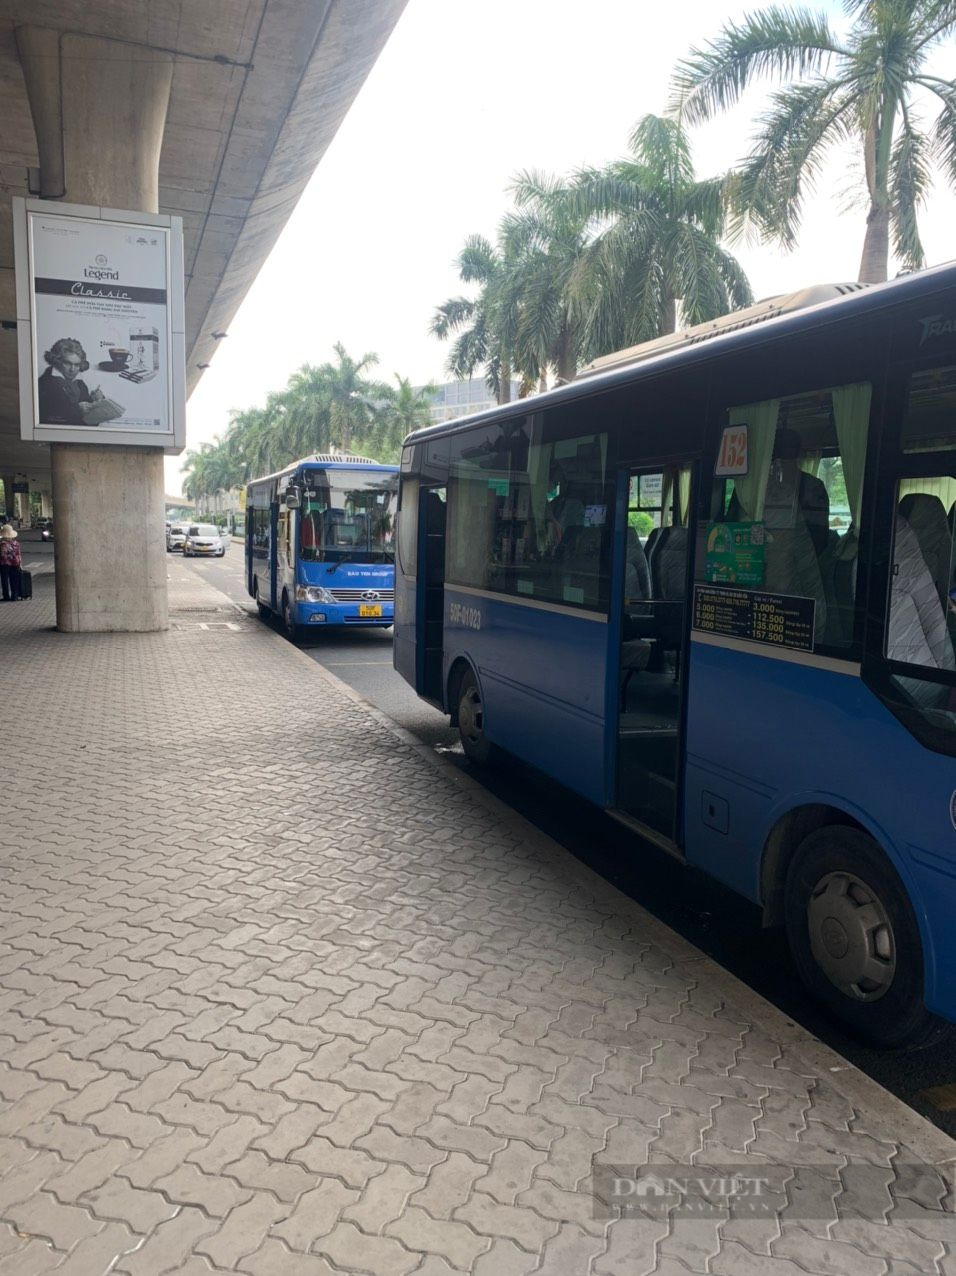 Tái khởi động tuyến xe buýt 109 giải toả ùn tắc sân bay Tân Sơn Nhất - Ảnh 1.